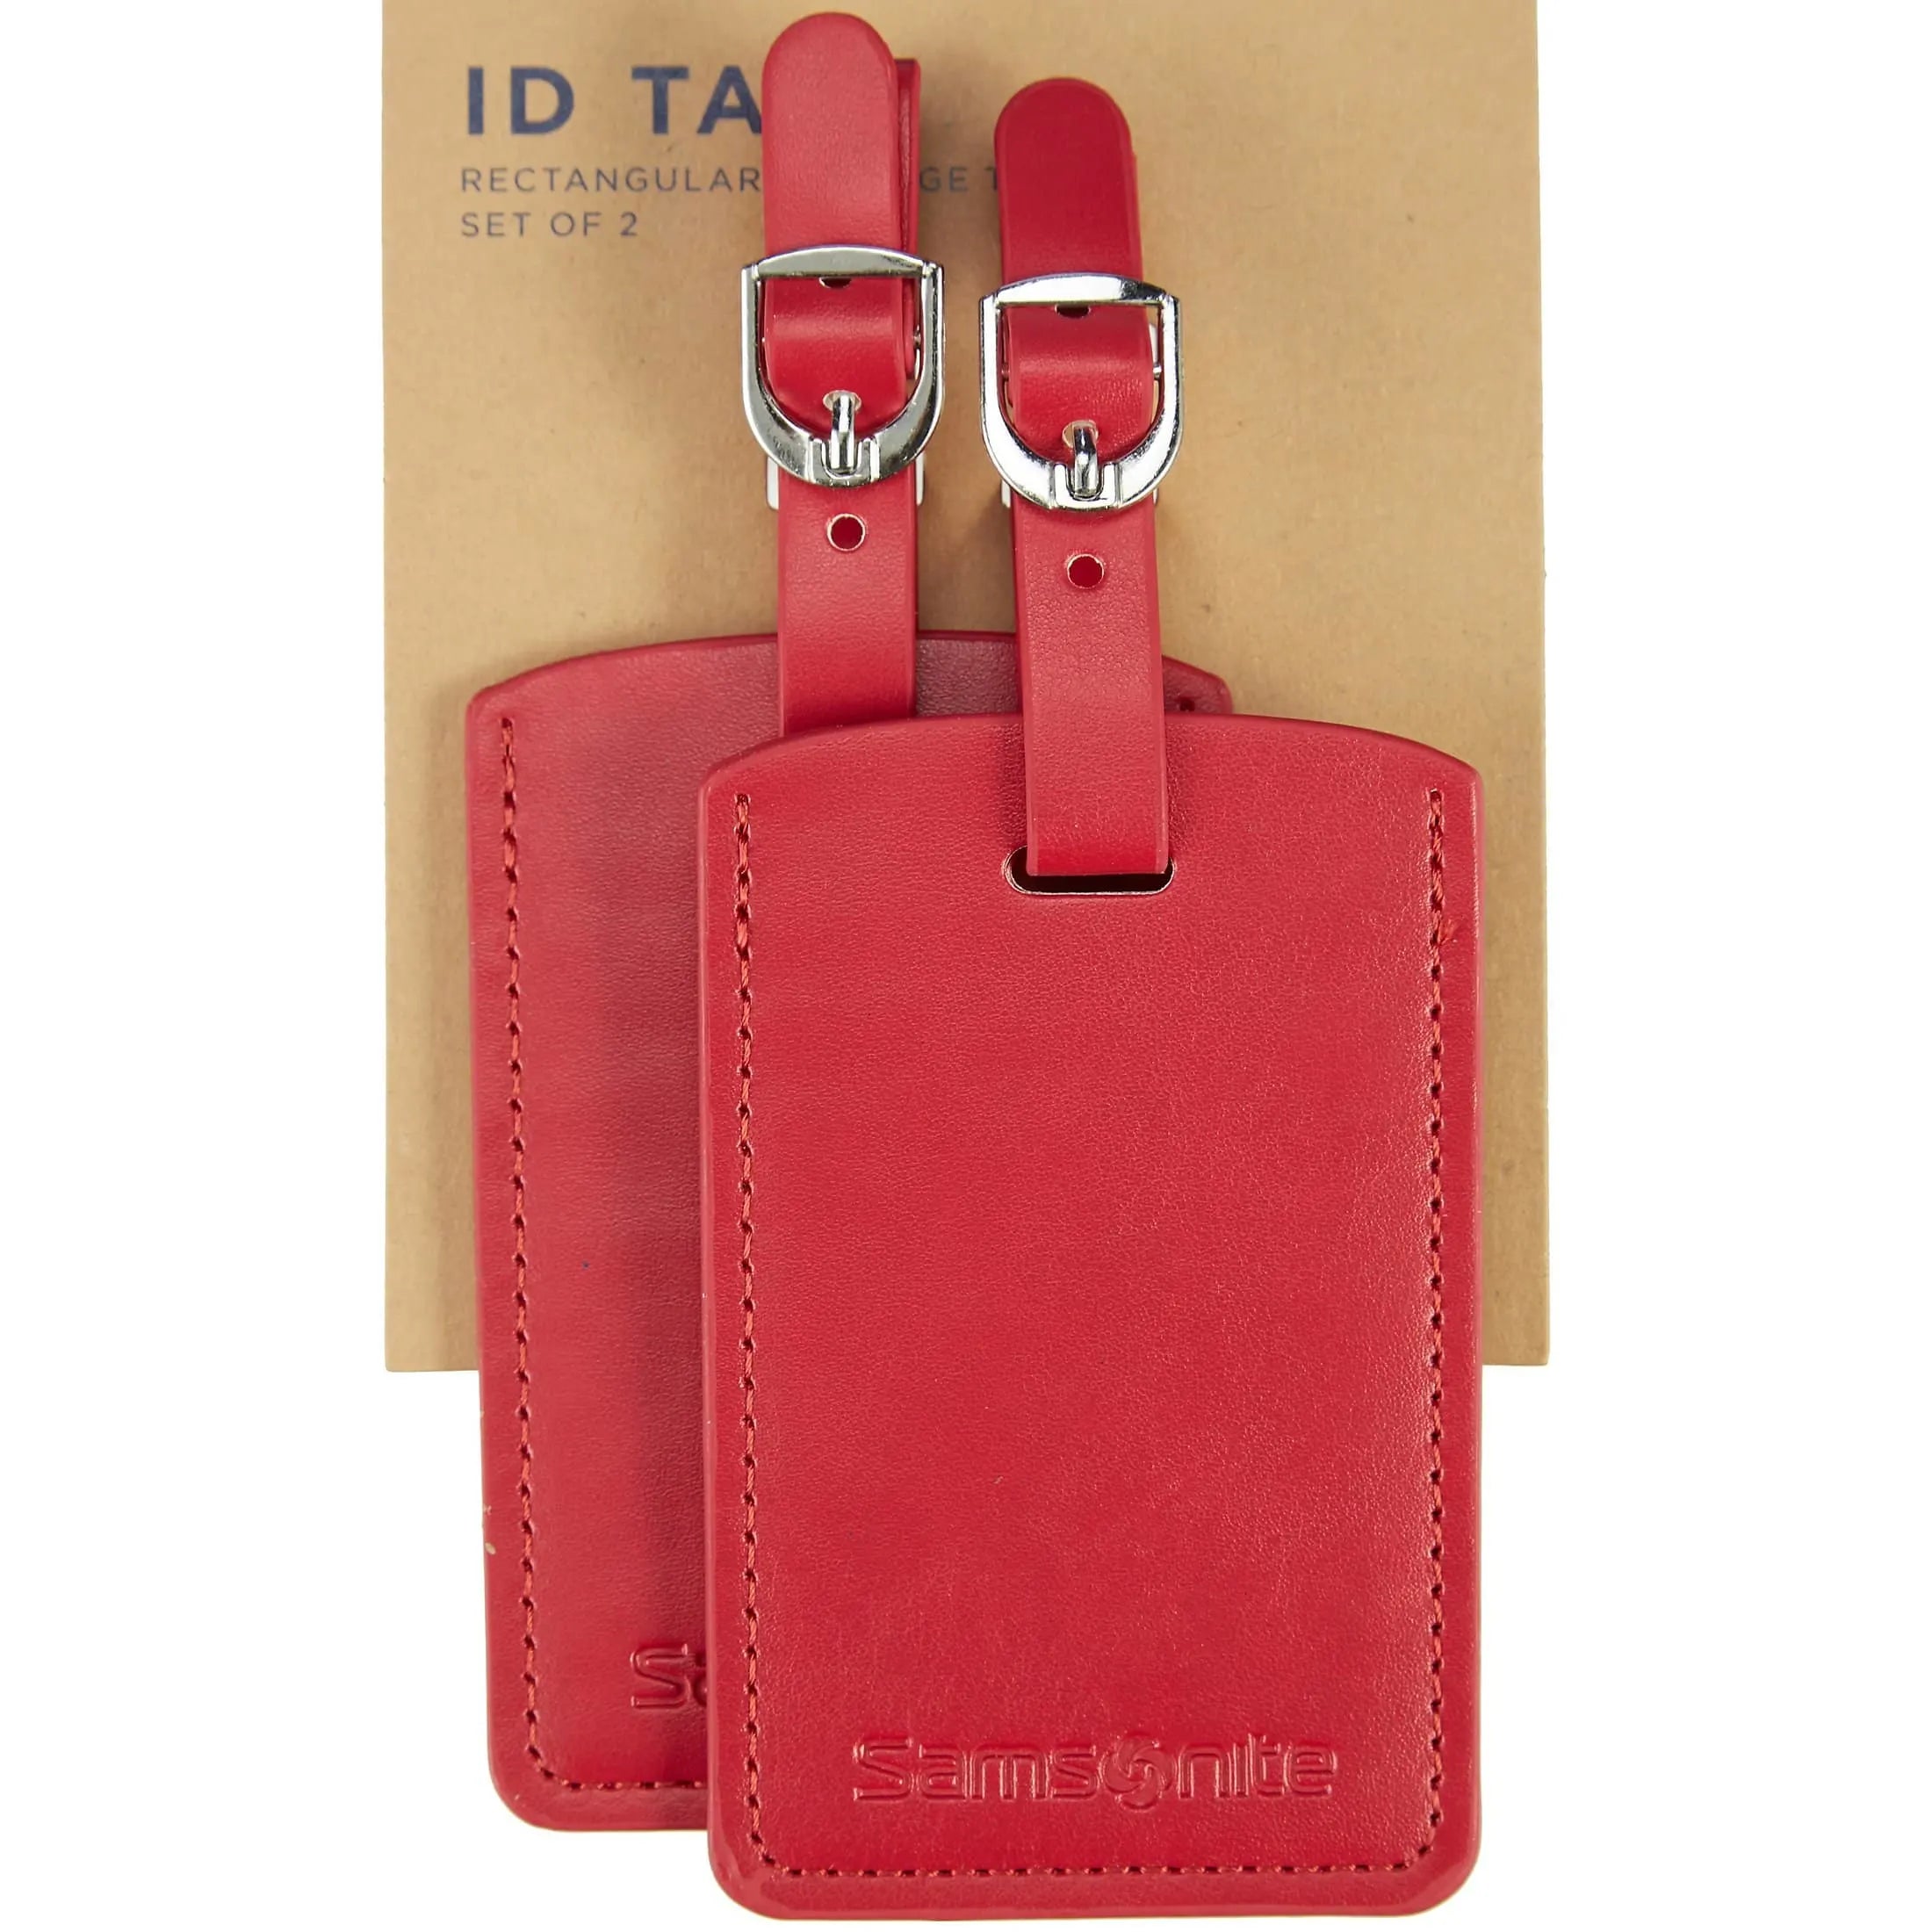 Samsonite Travel Accessories ensemble d'étiquettes à bagages - rouge